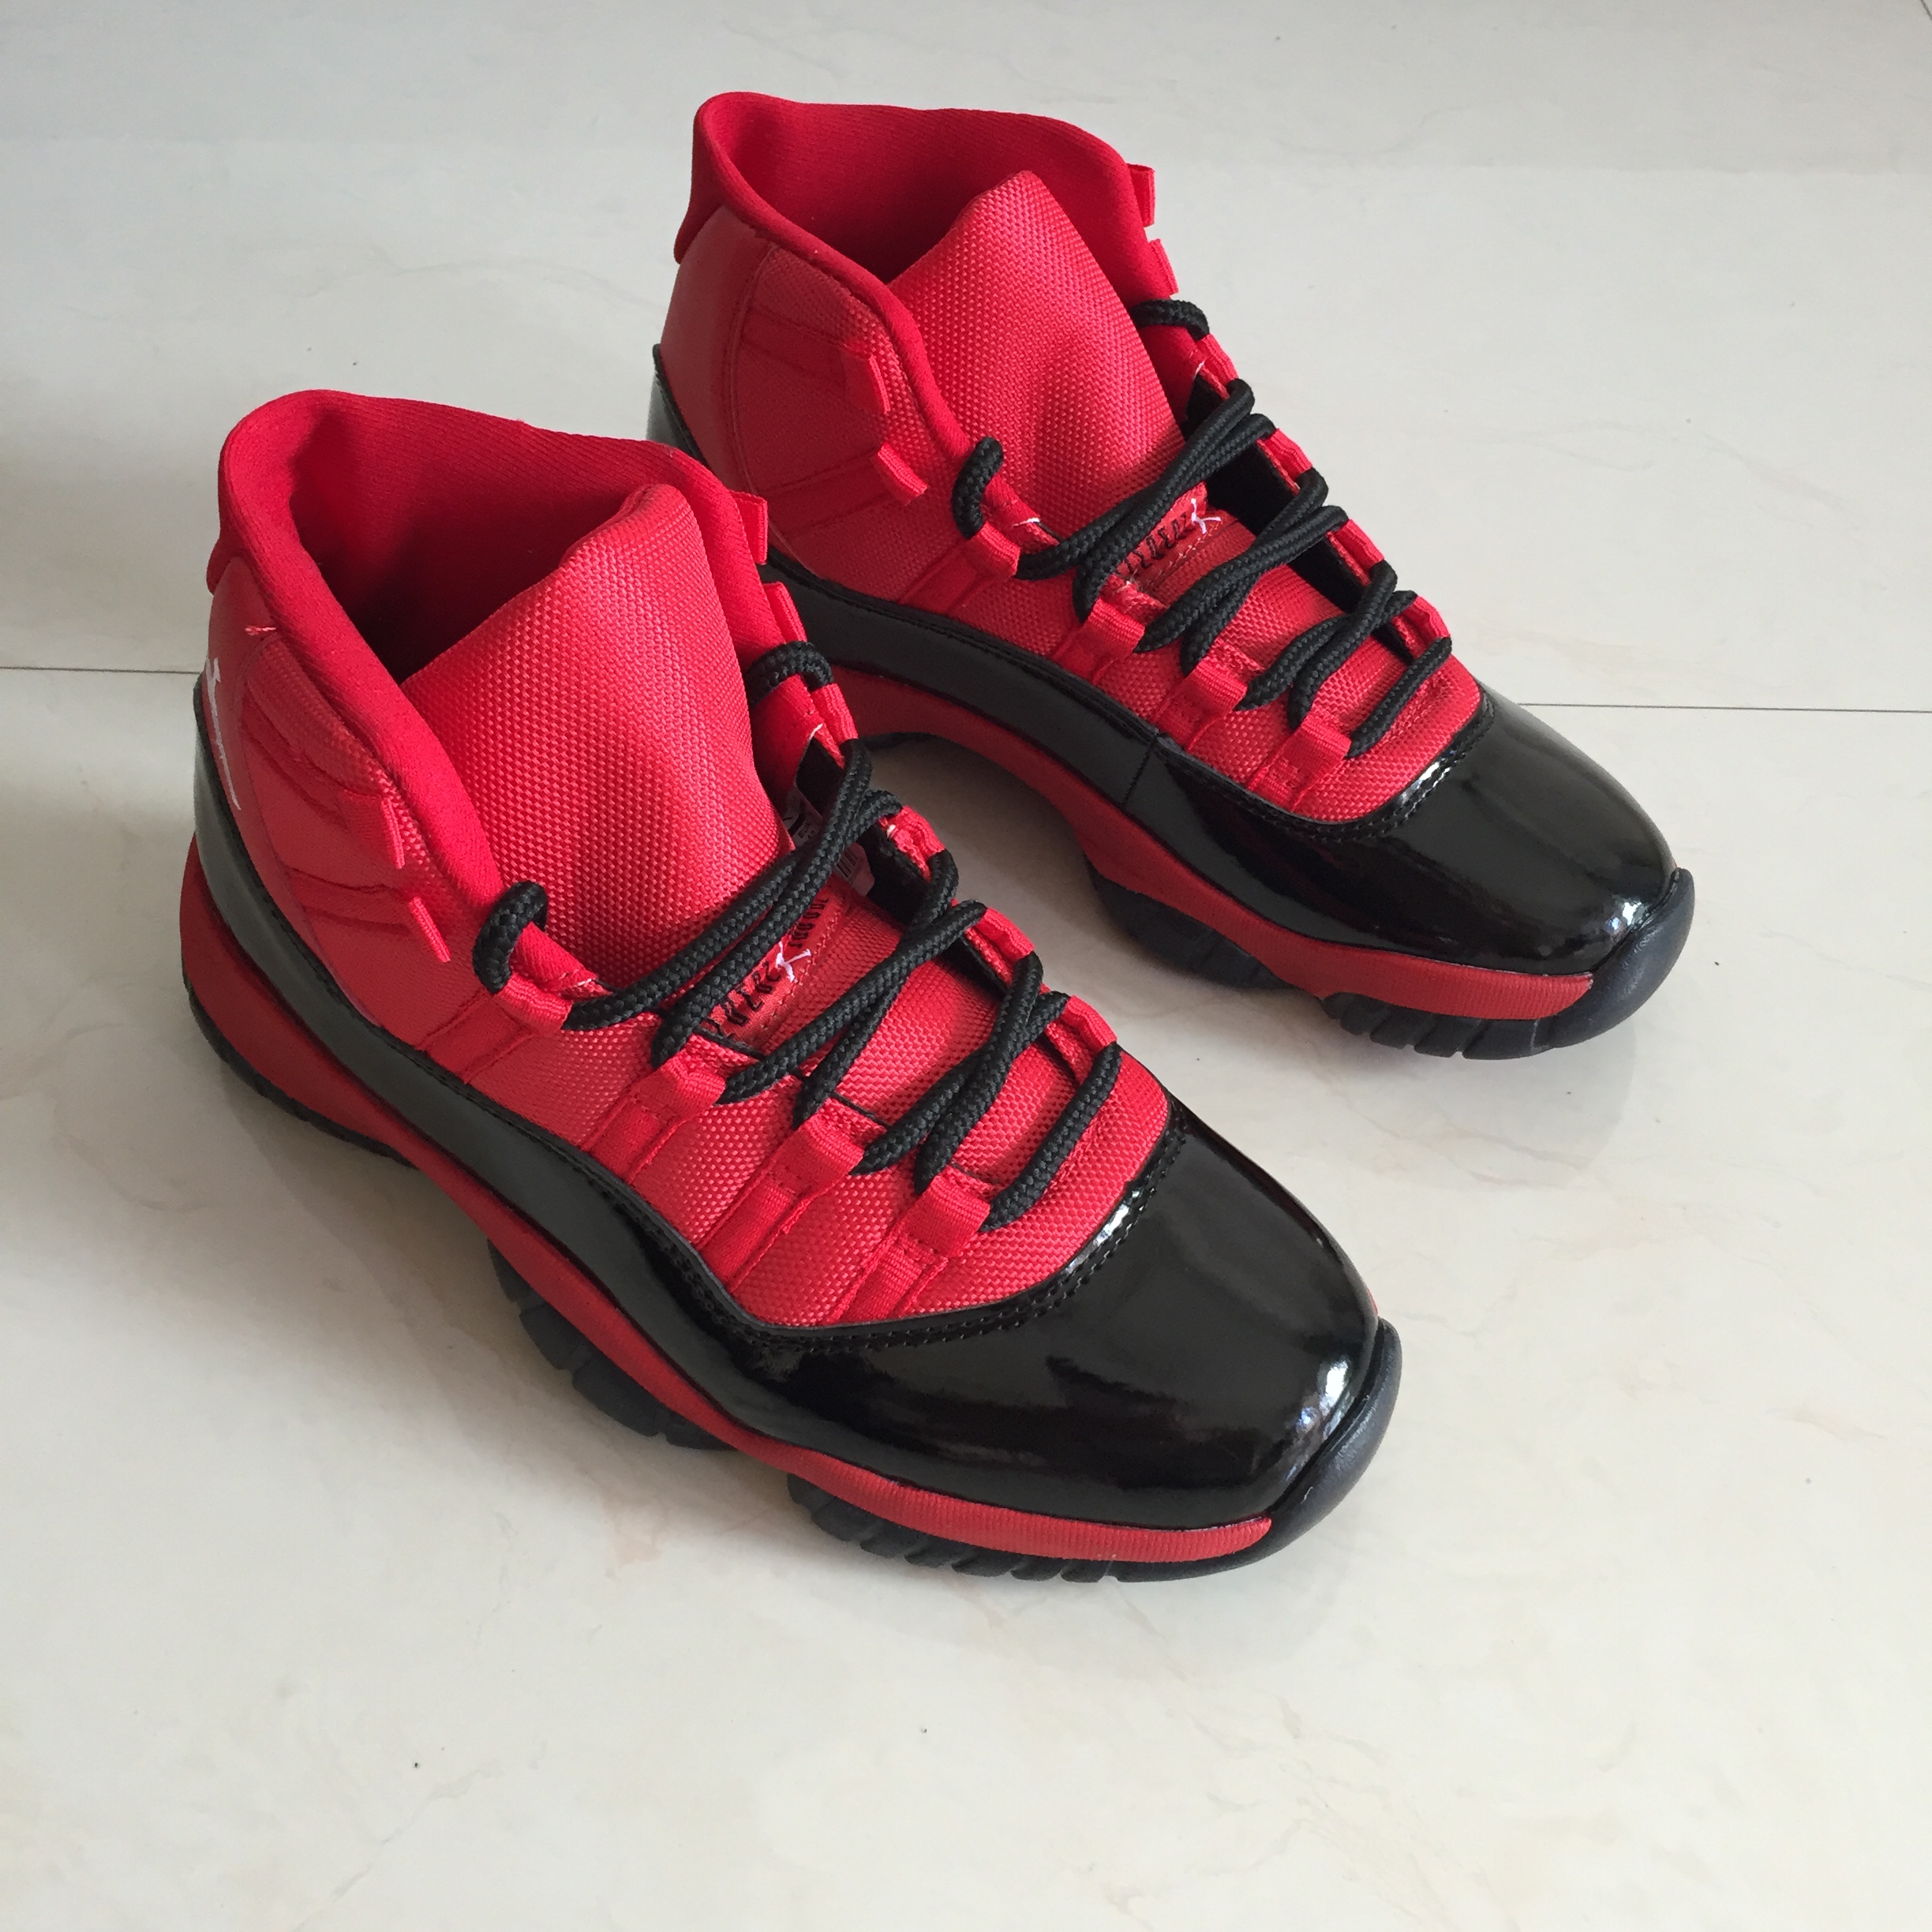 New Air Jordan 11 Retro Red Black